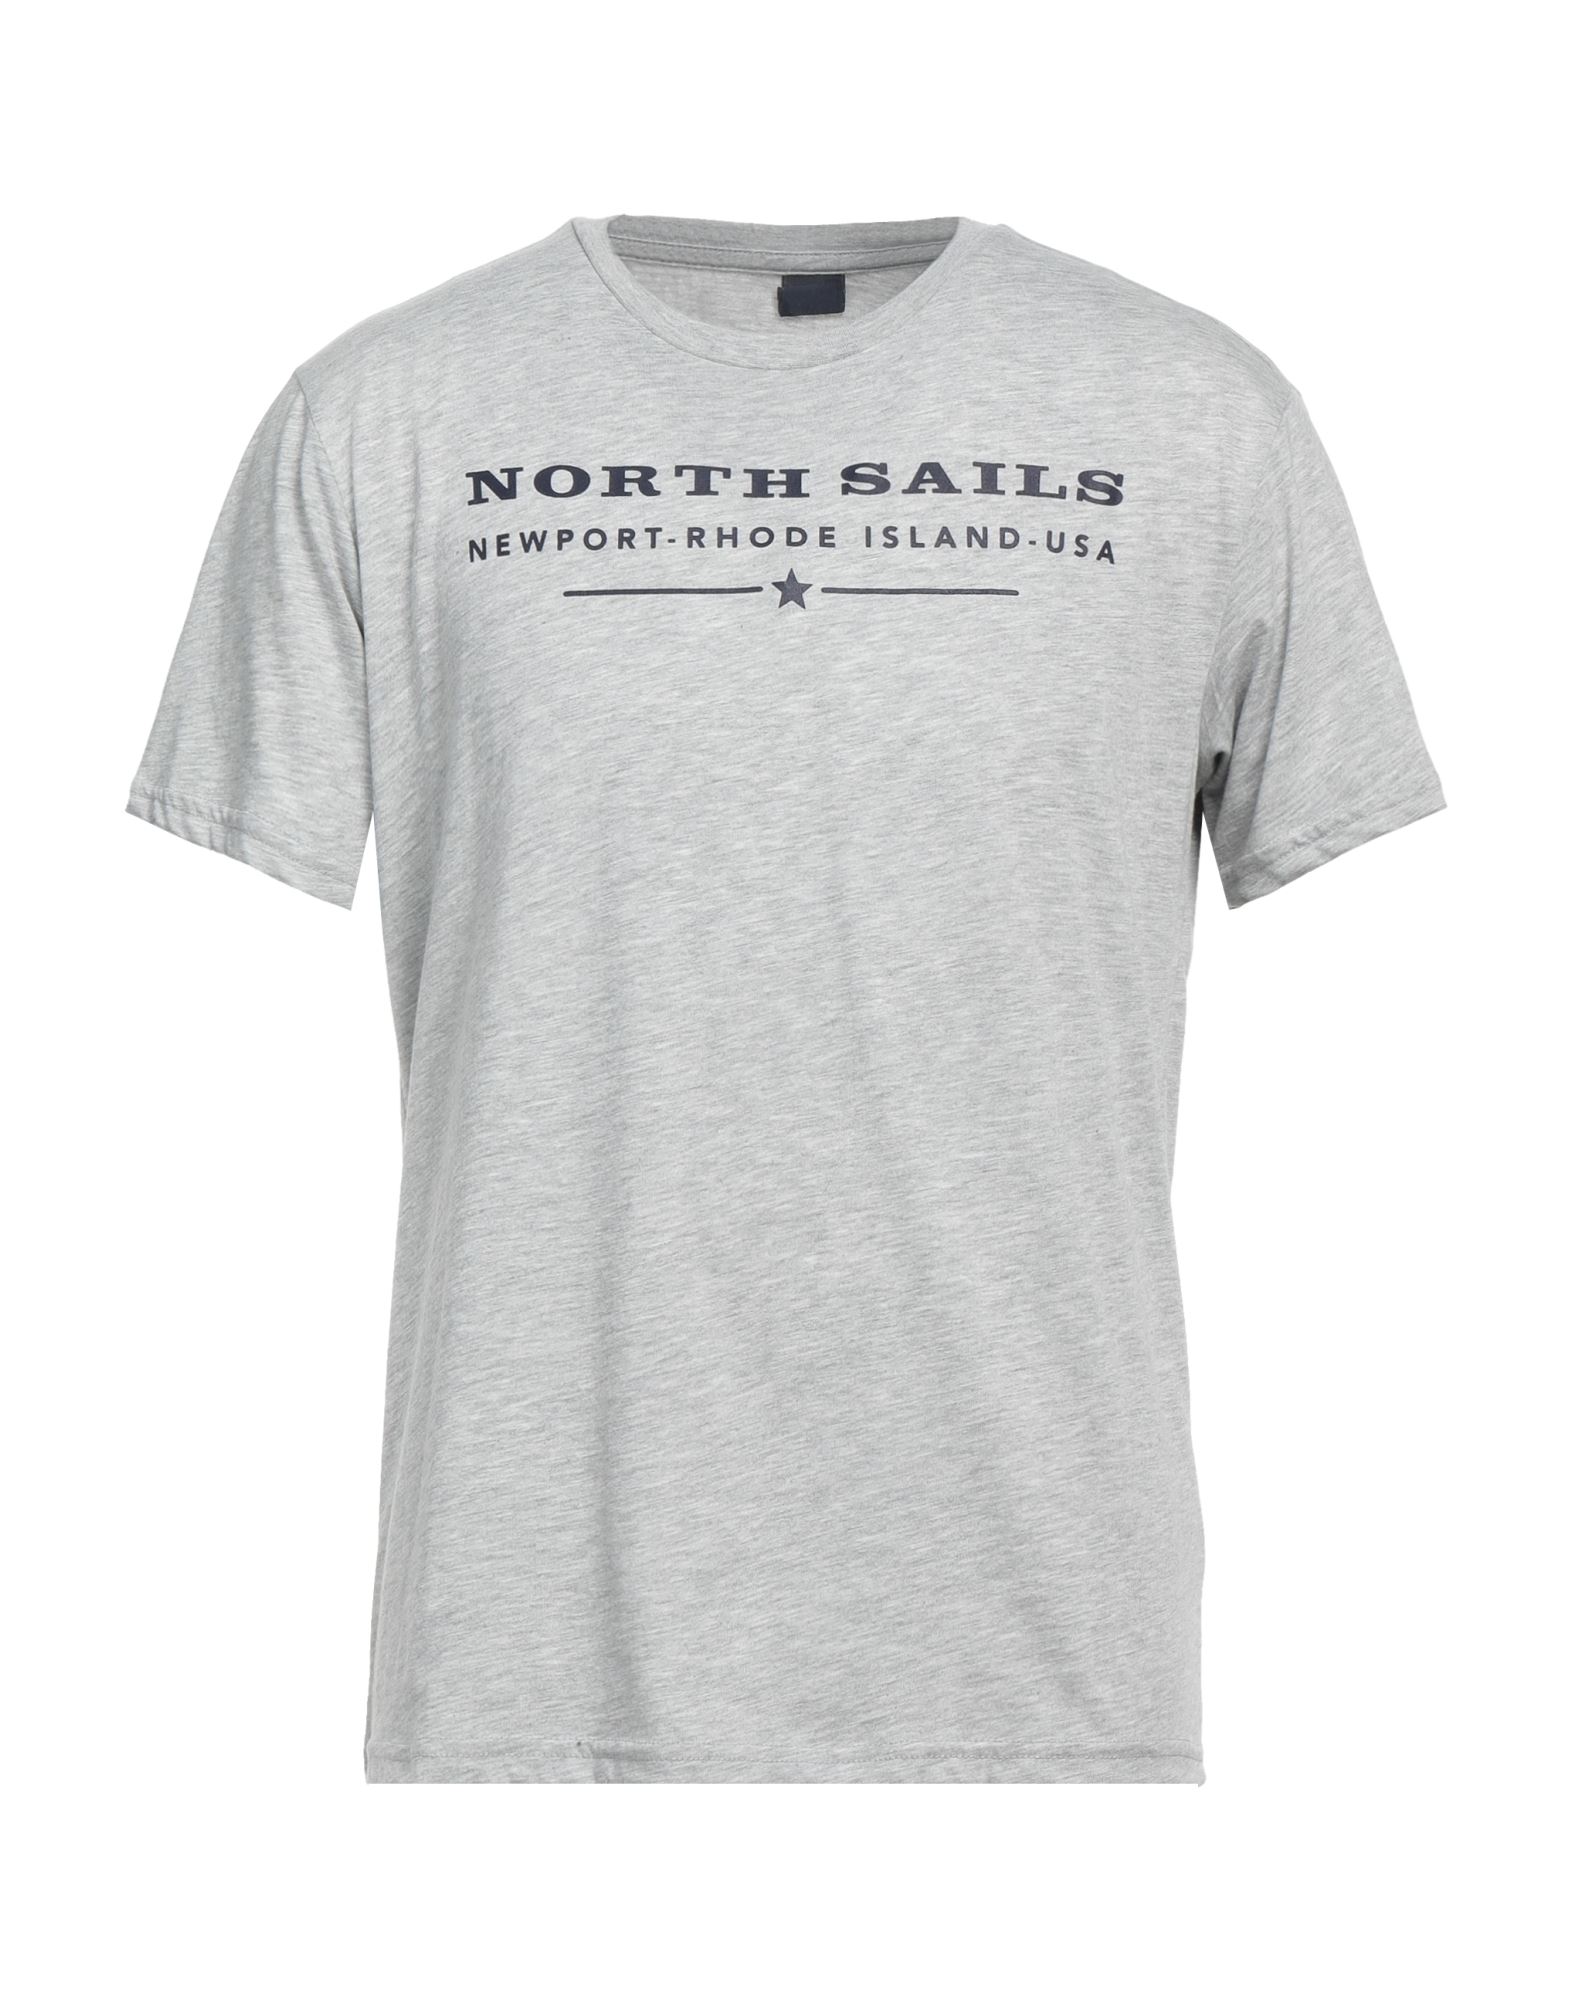 NORTH SAILS T-shirts Herren Grau von NORTH SAILS